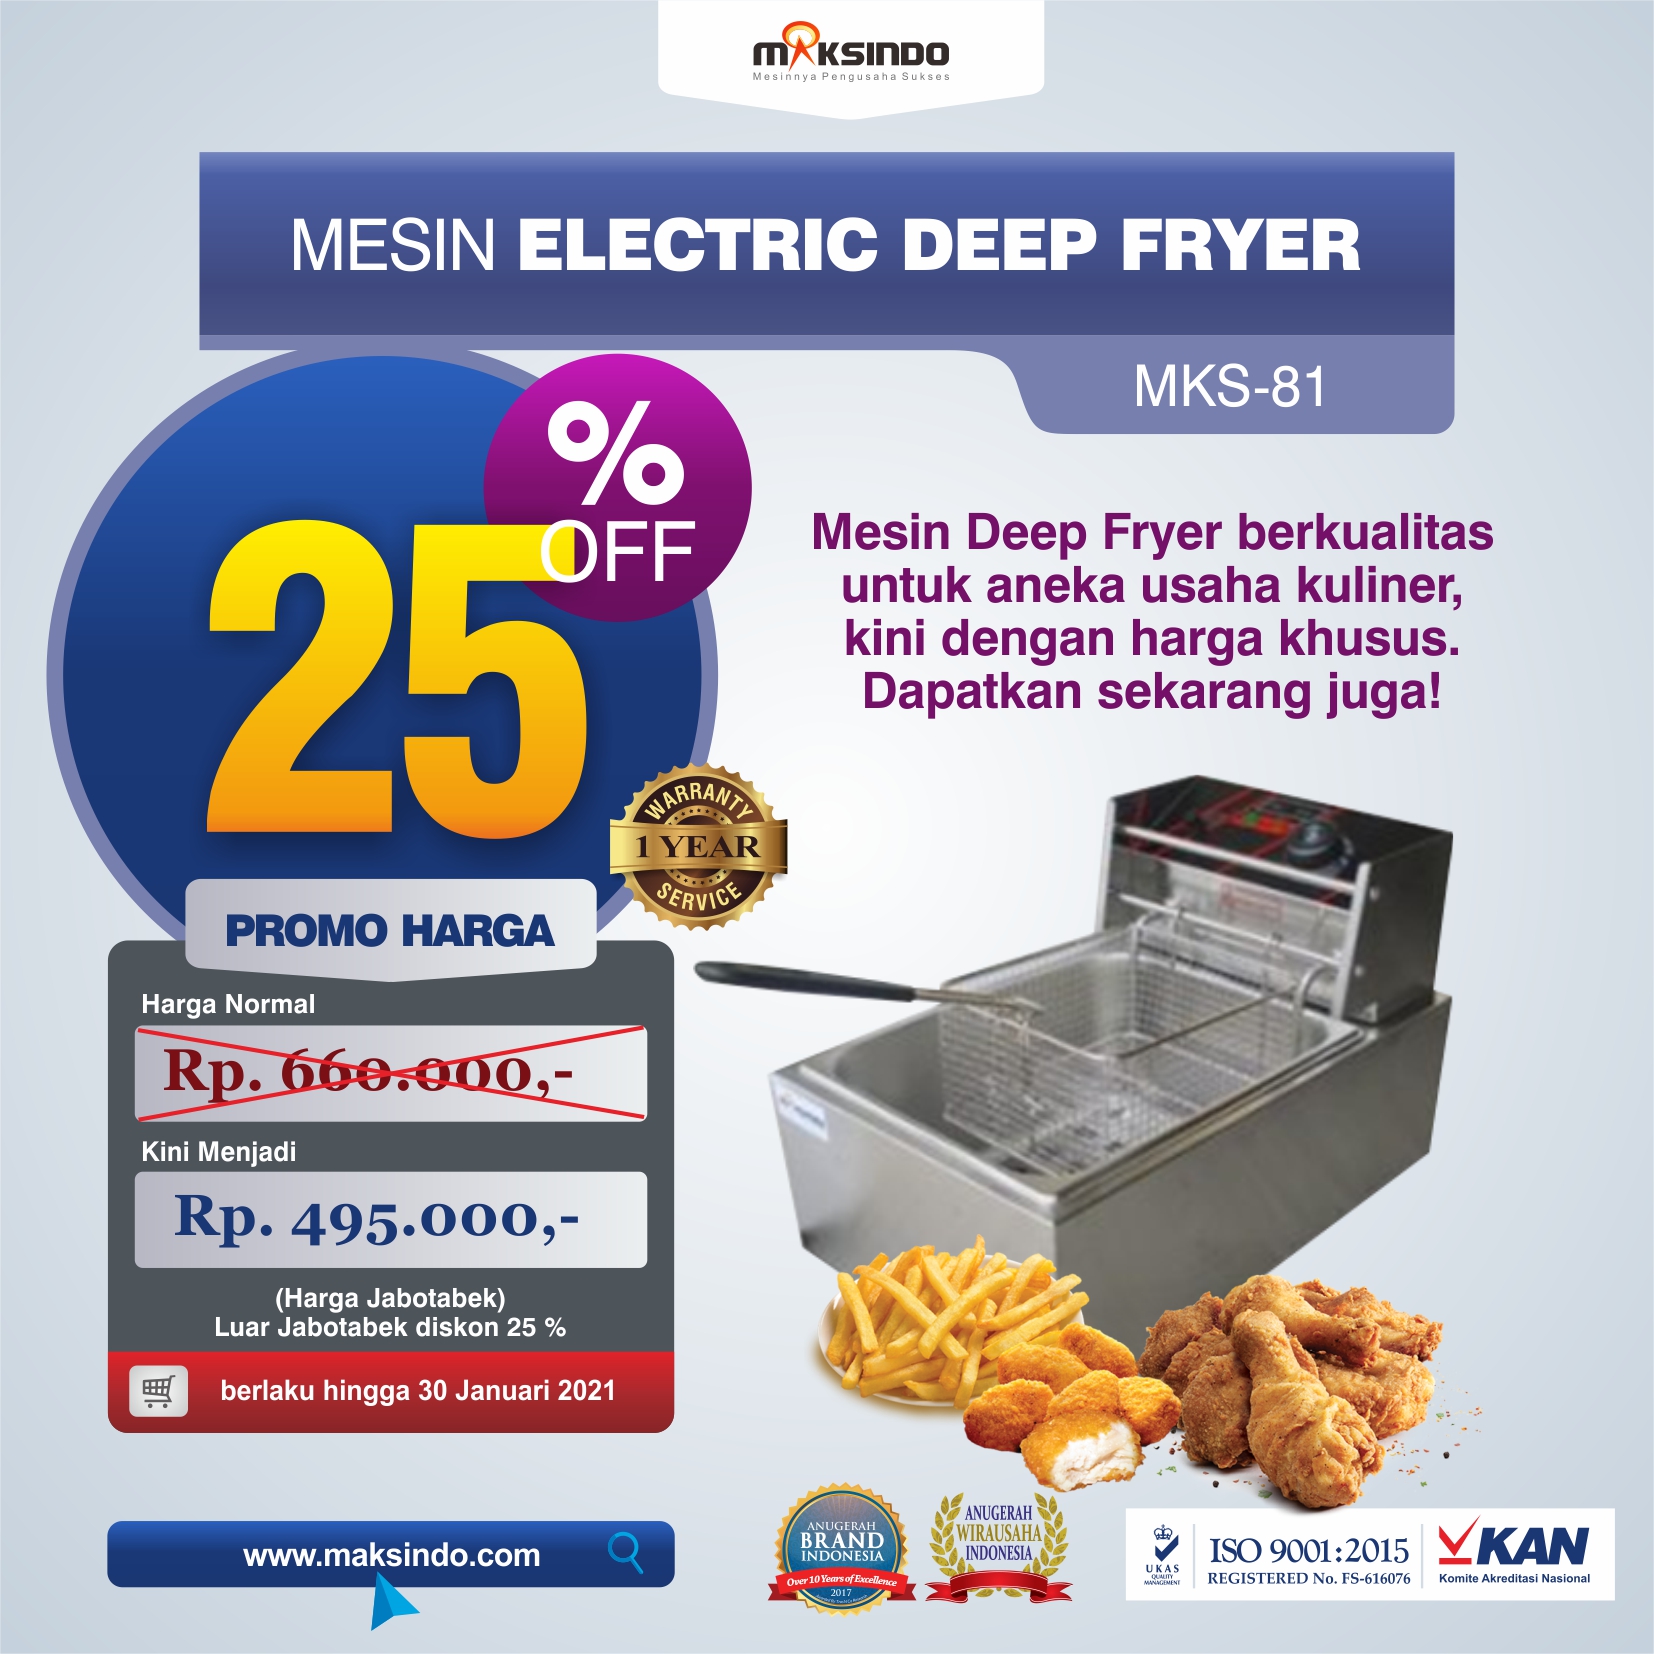 Jual Mesin Electric Deep Fryer MKS-81 di Bekasi